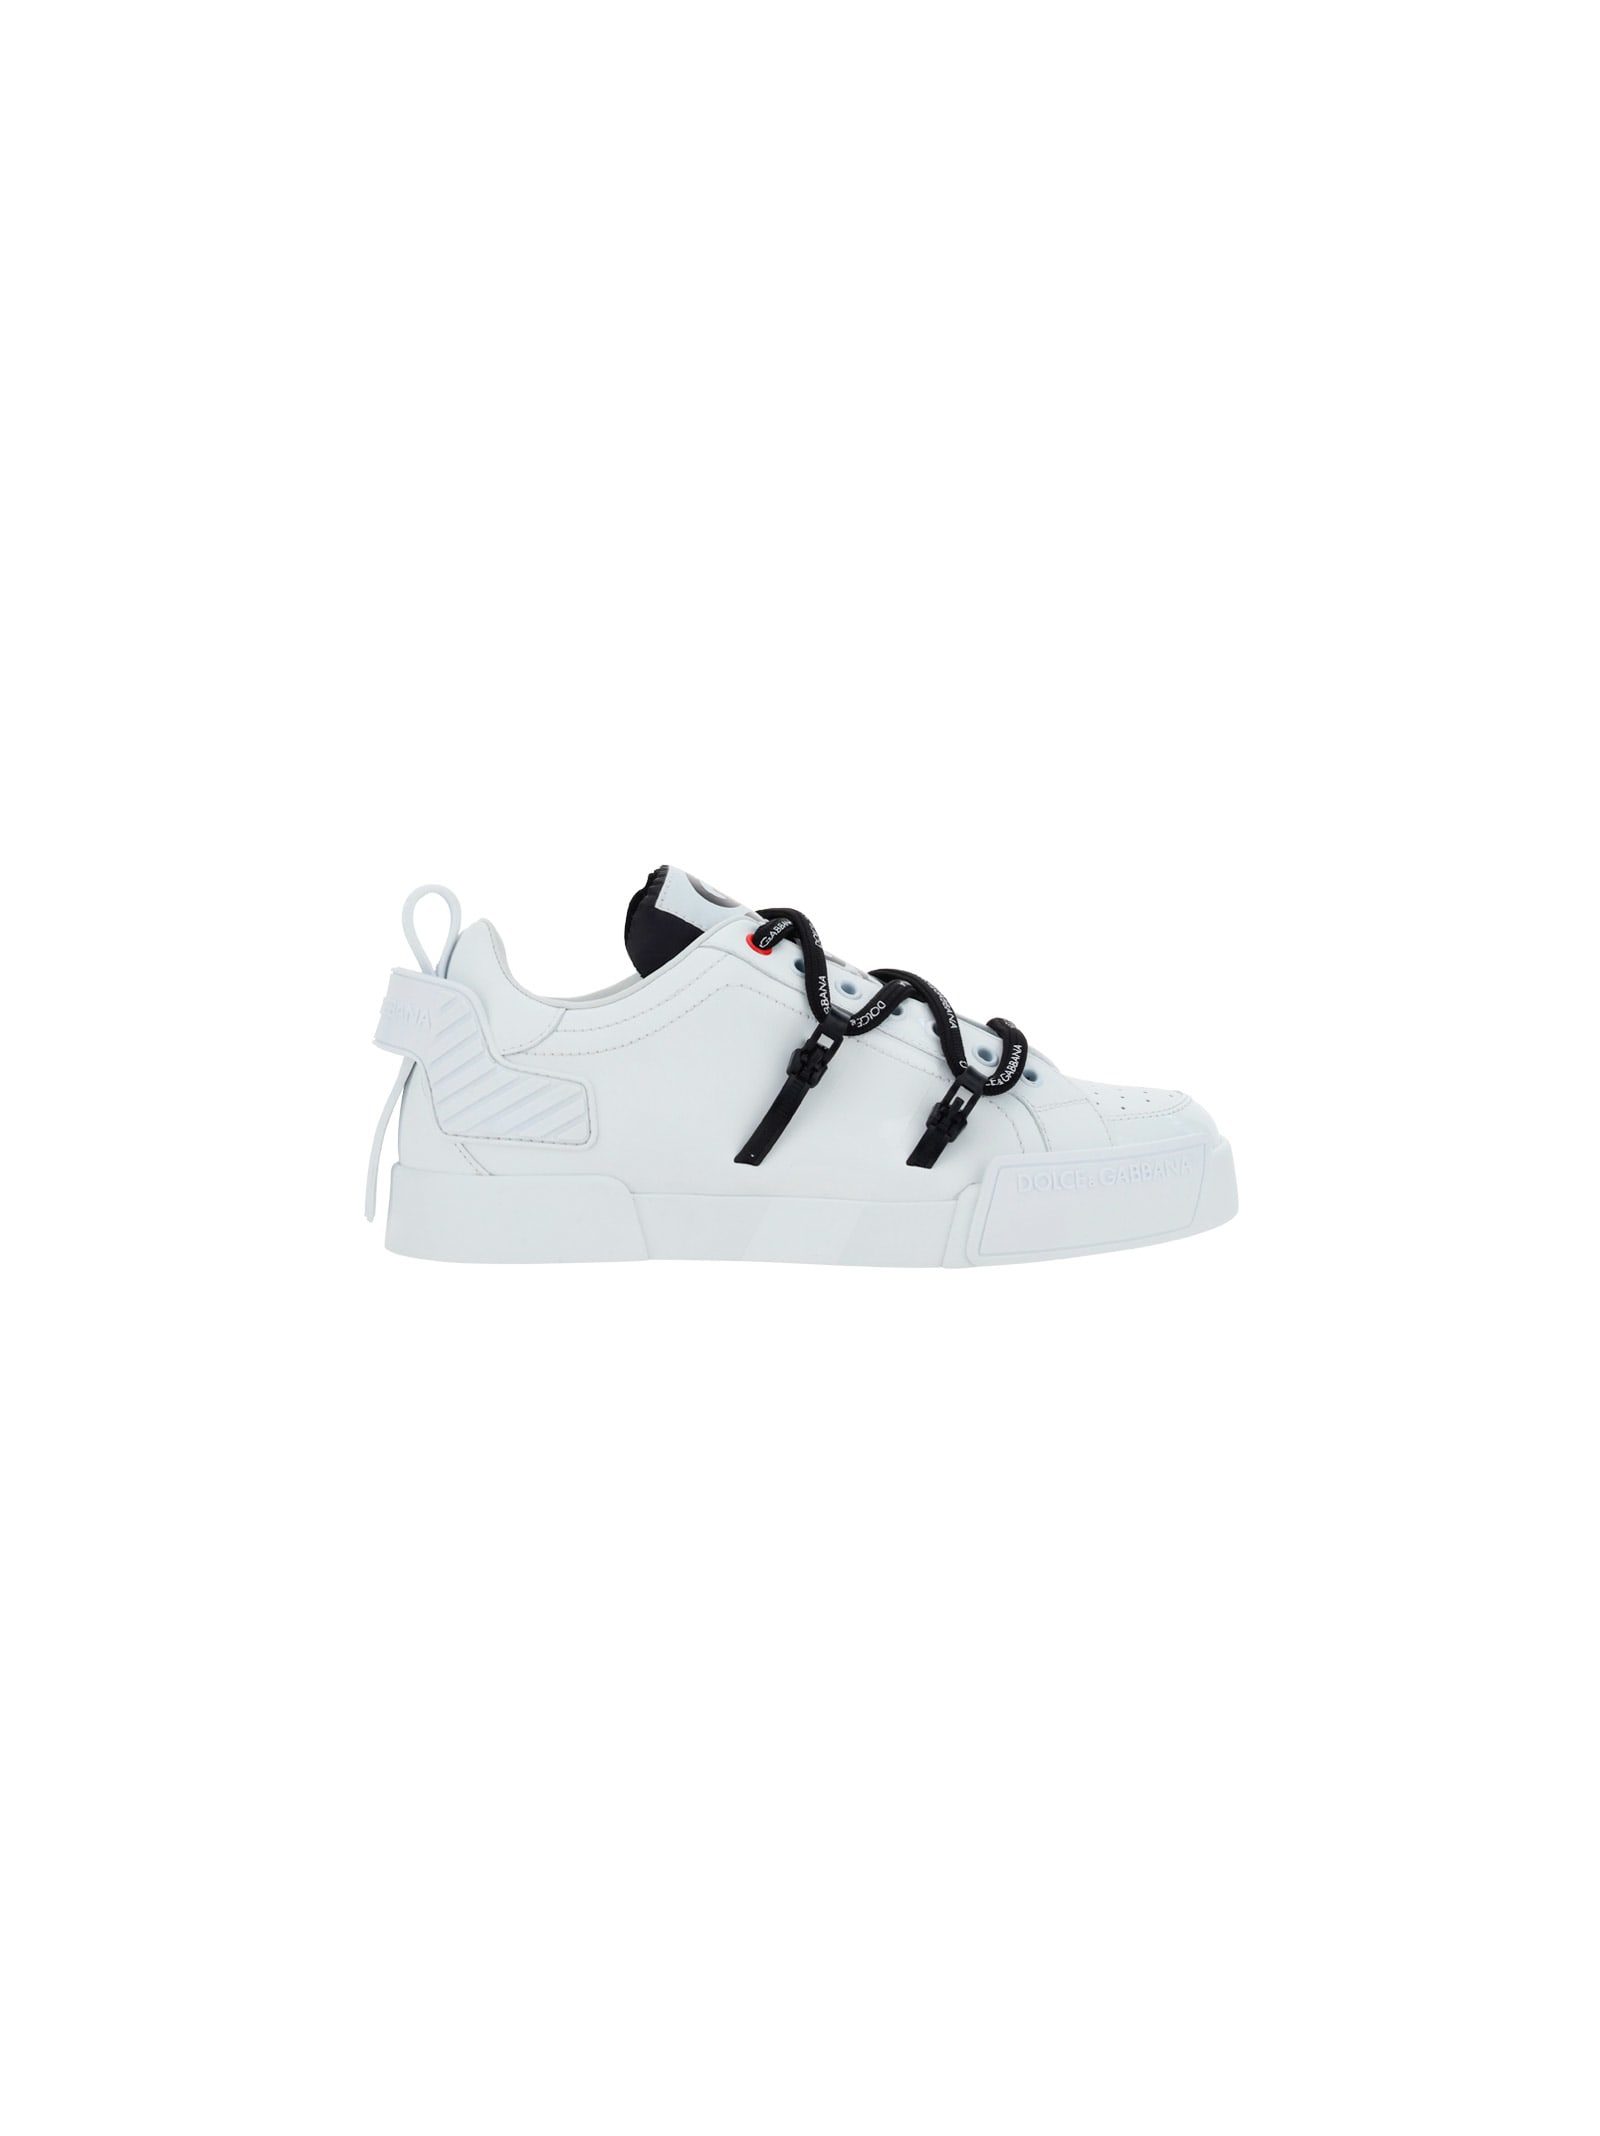 Dolce & Gabbana Portofino Sneakers In Bianco/nero